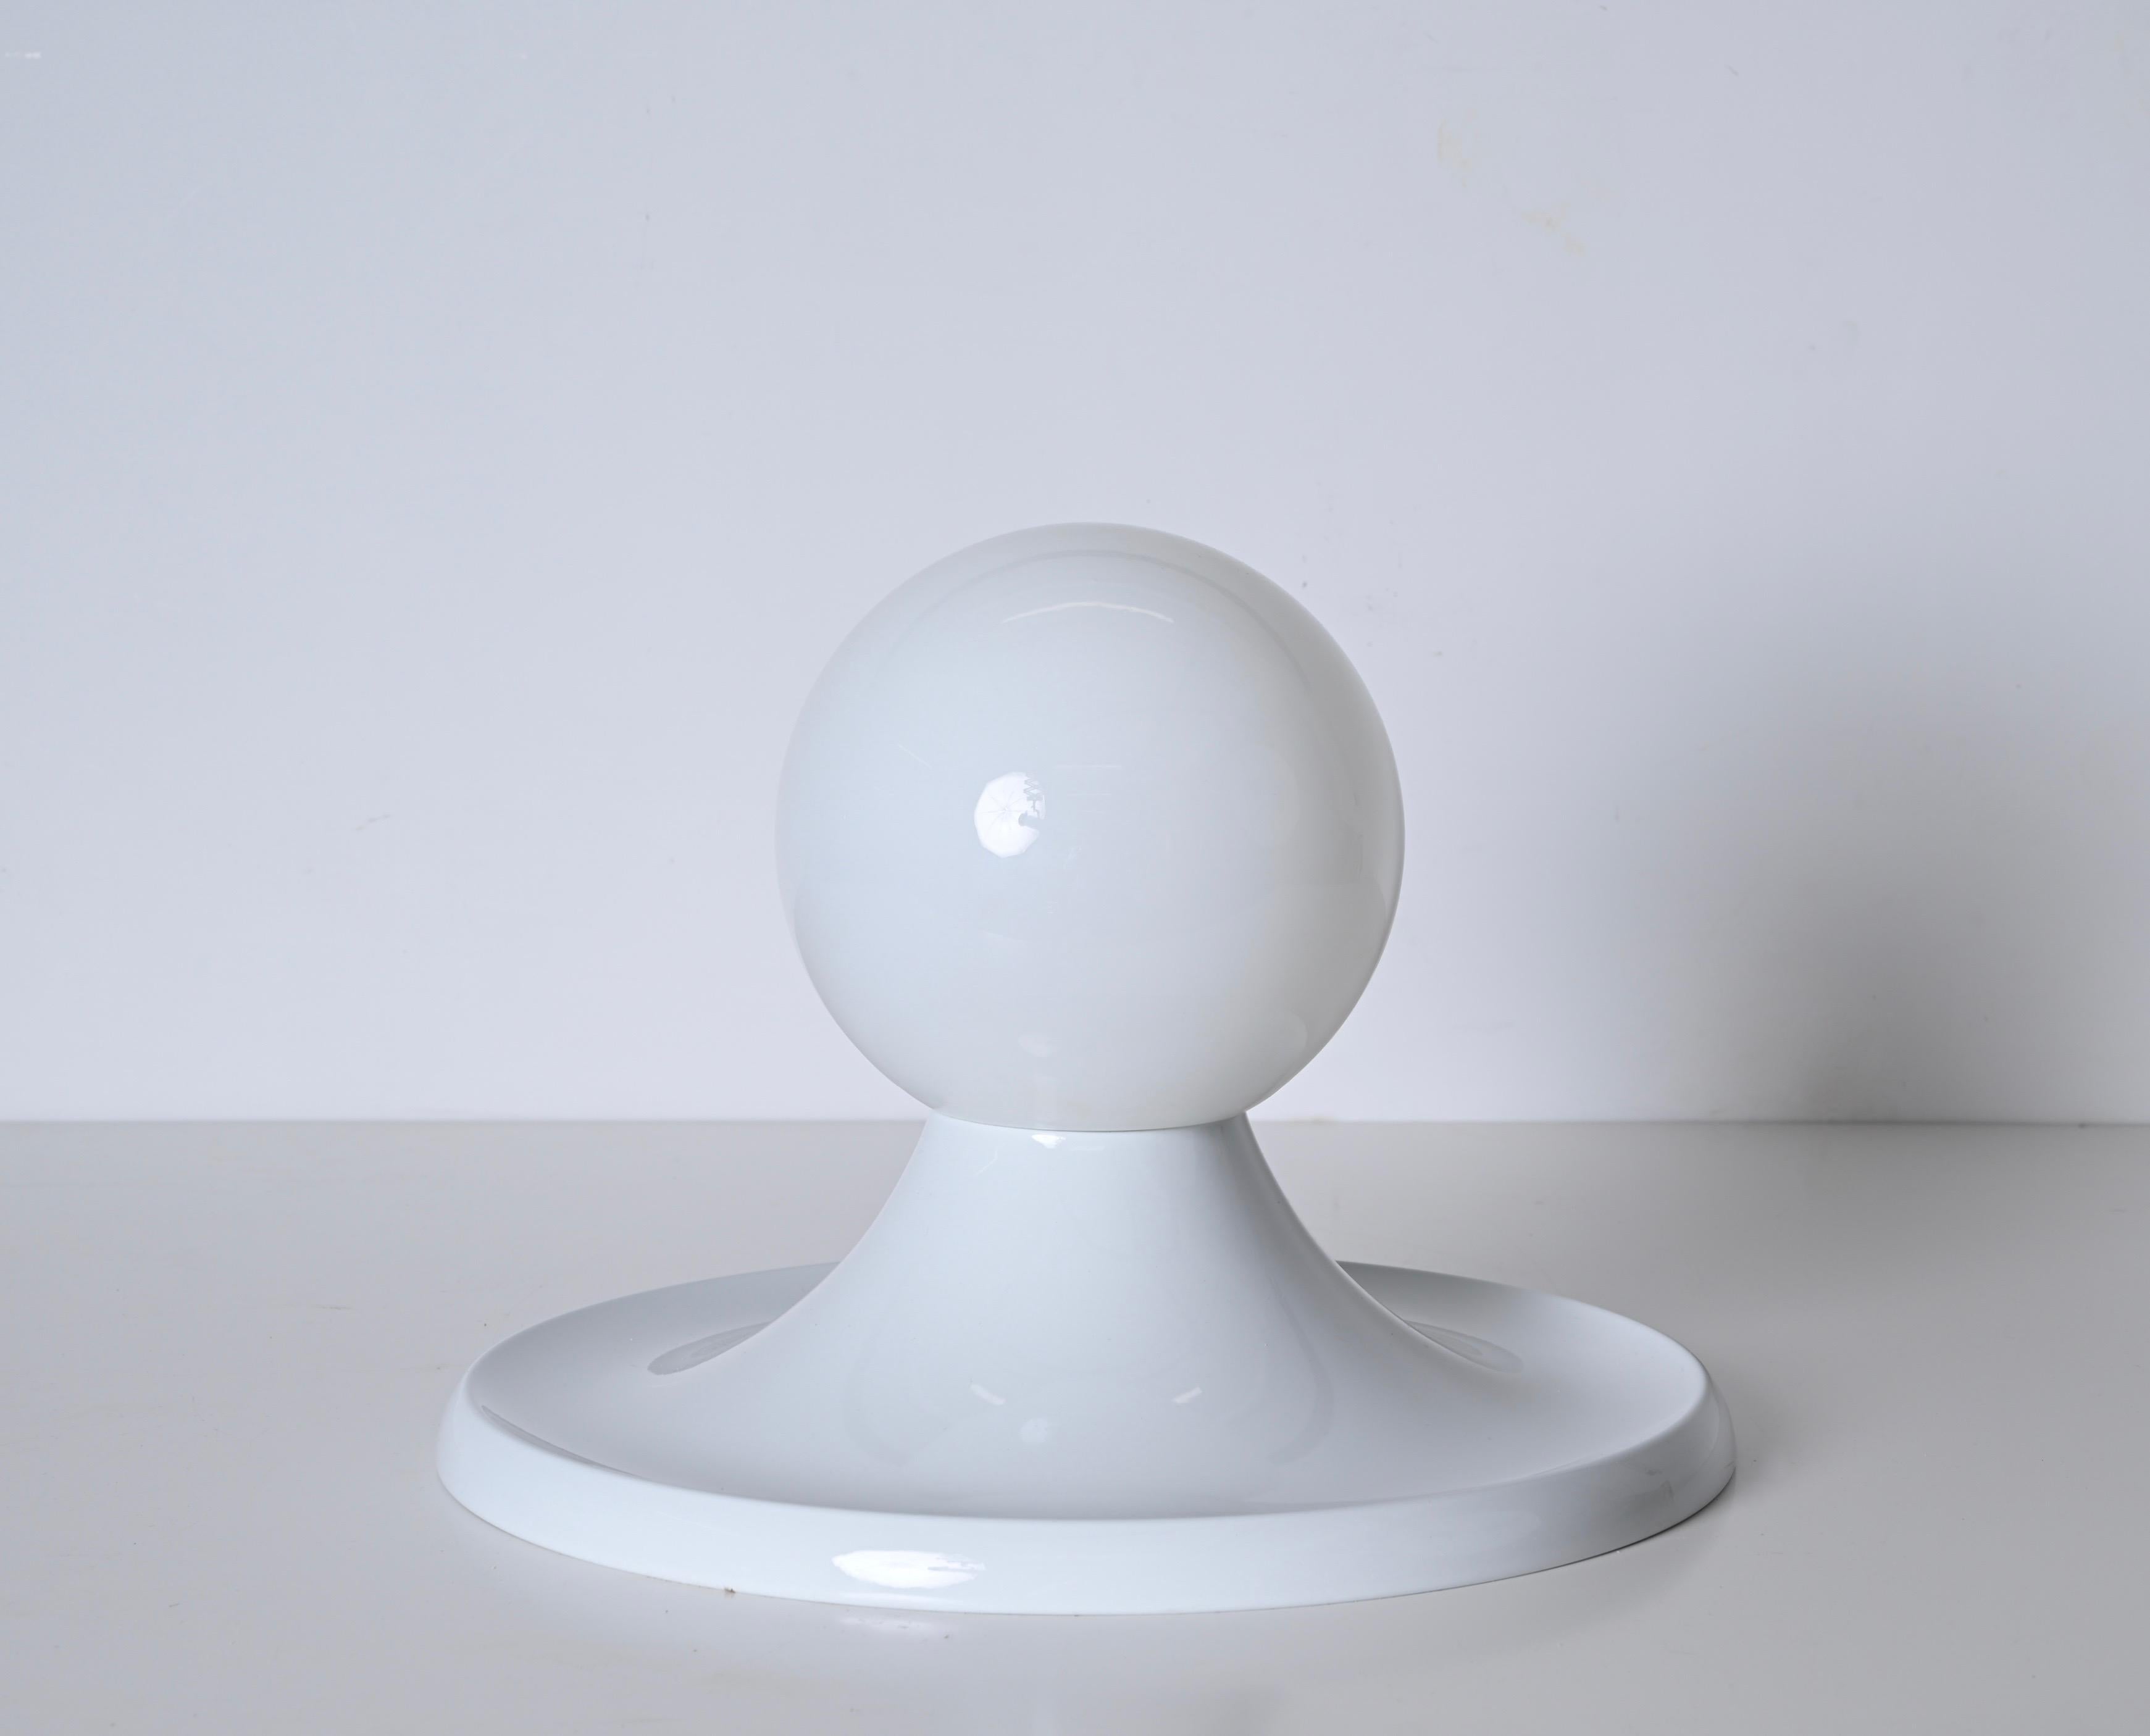 Magnifique lumière blanche  Boule, conçue par Achille Castiglioni pour Flos en Italie dans les années 1960. En métal blanc et verre opale. Cette lampe fantastique a été conçue par Castiglioni pour Arteluce et produite en Italie par Flos dans les